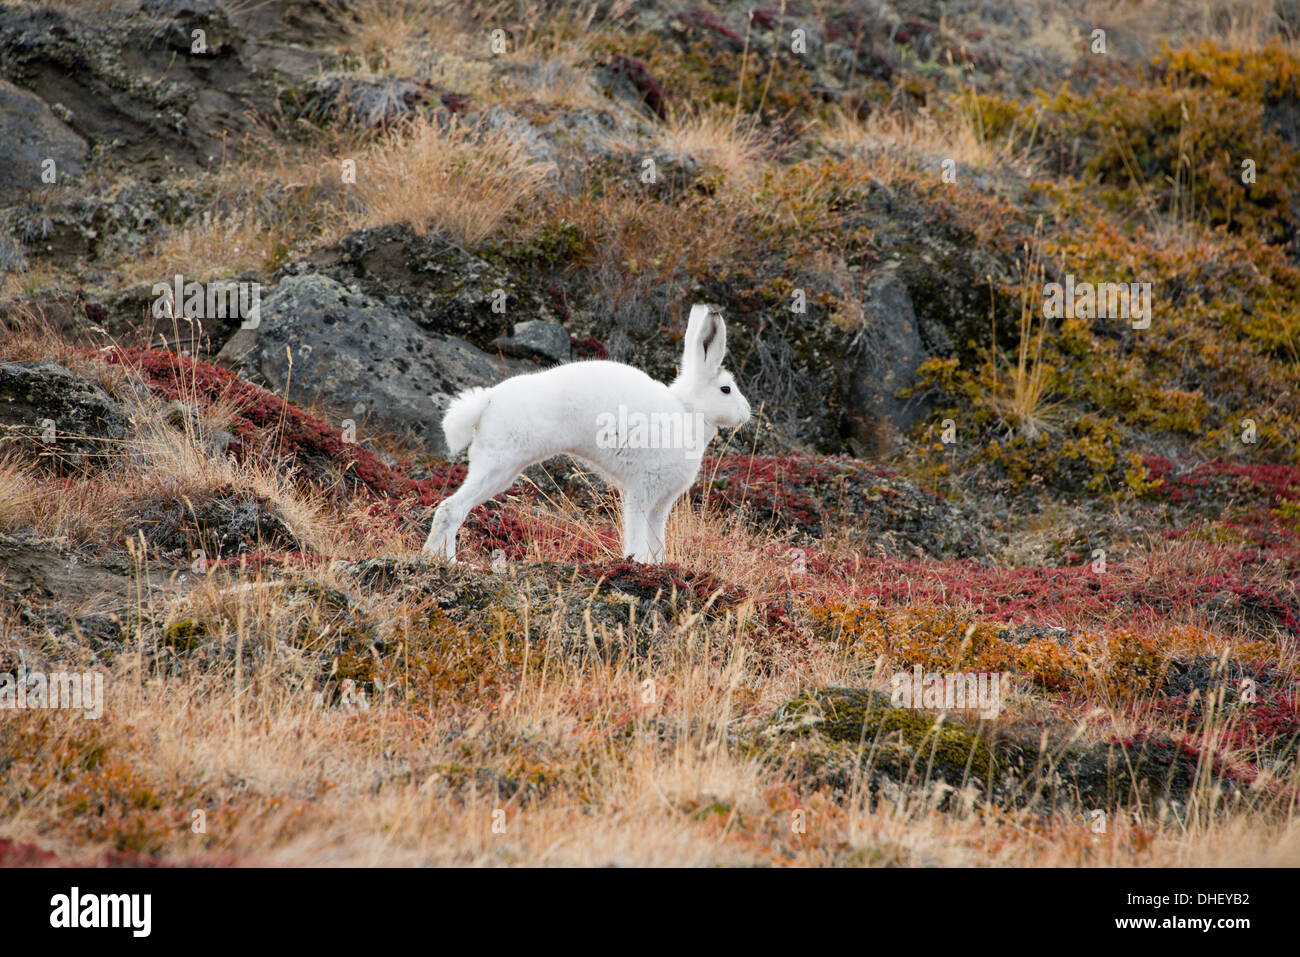 Grönland, Qeqqata Gemeinde, Kangerlussuaq (große Fjord) aka Sondrestrom. Schneehase (Lepus Arcticus) im Herbst Lebensraum. Stockfoto